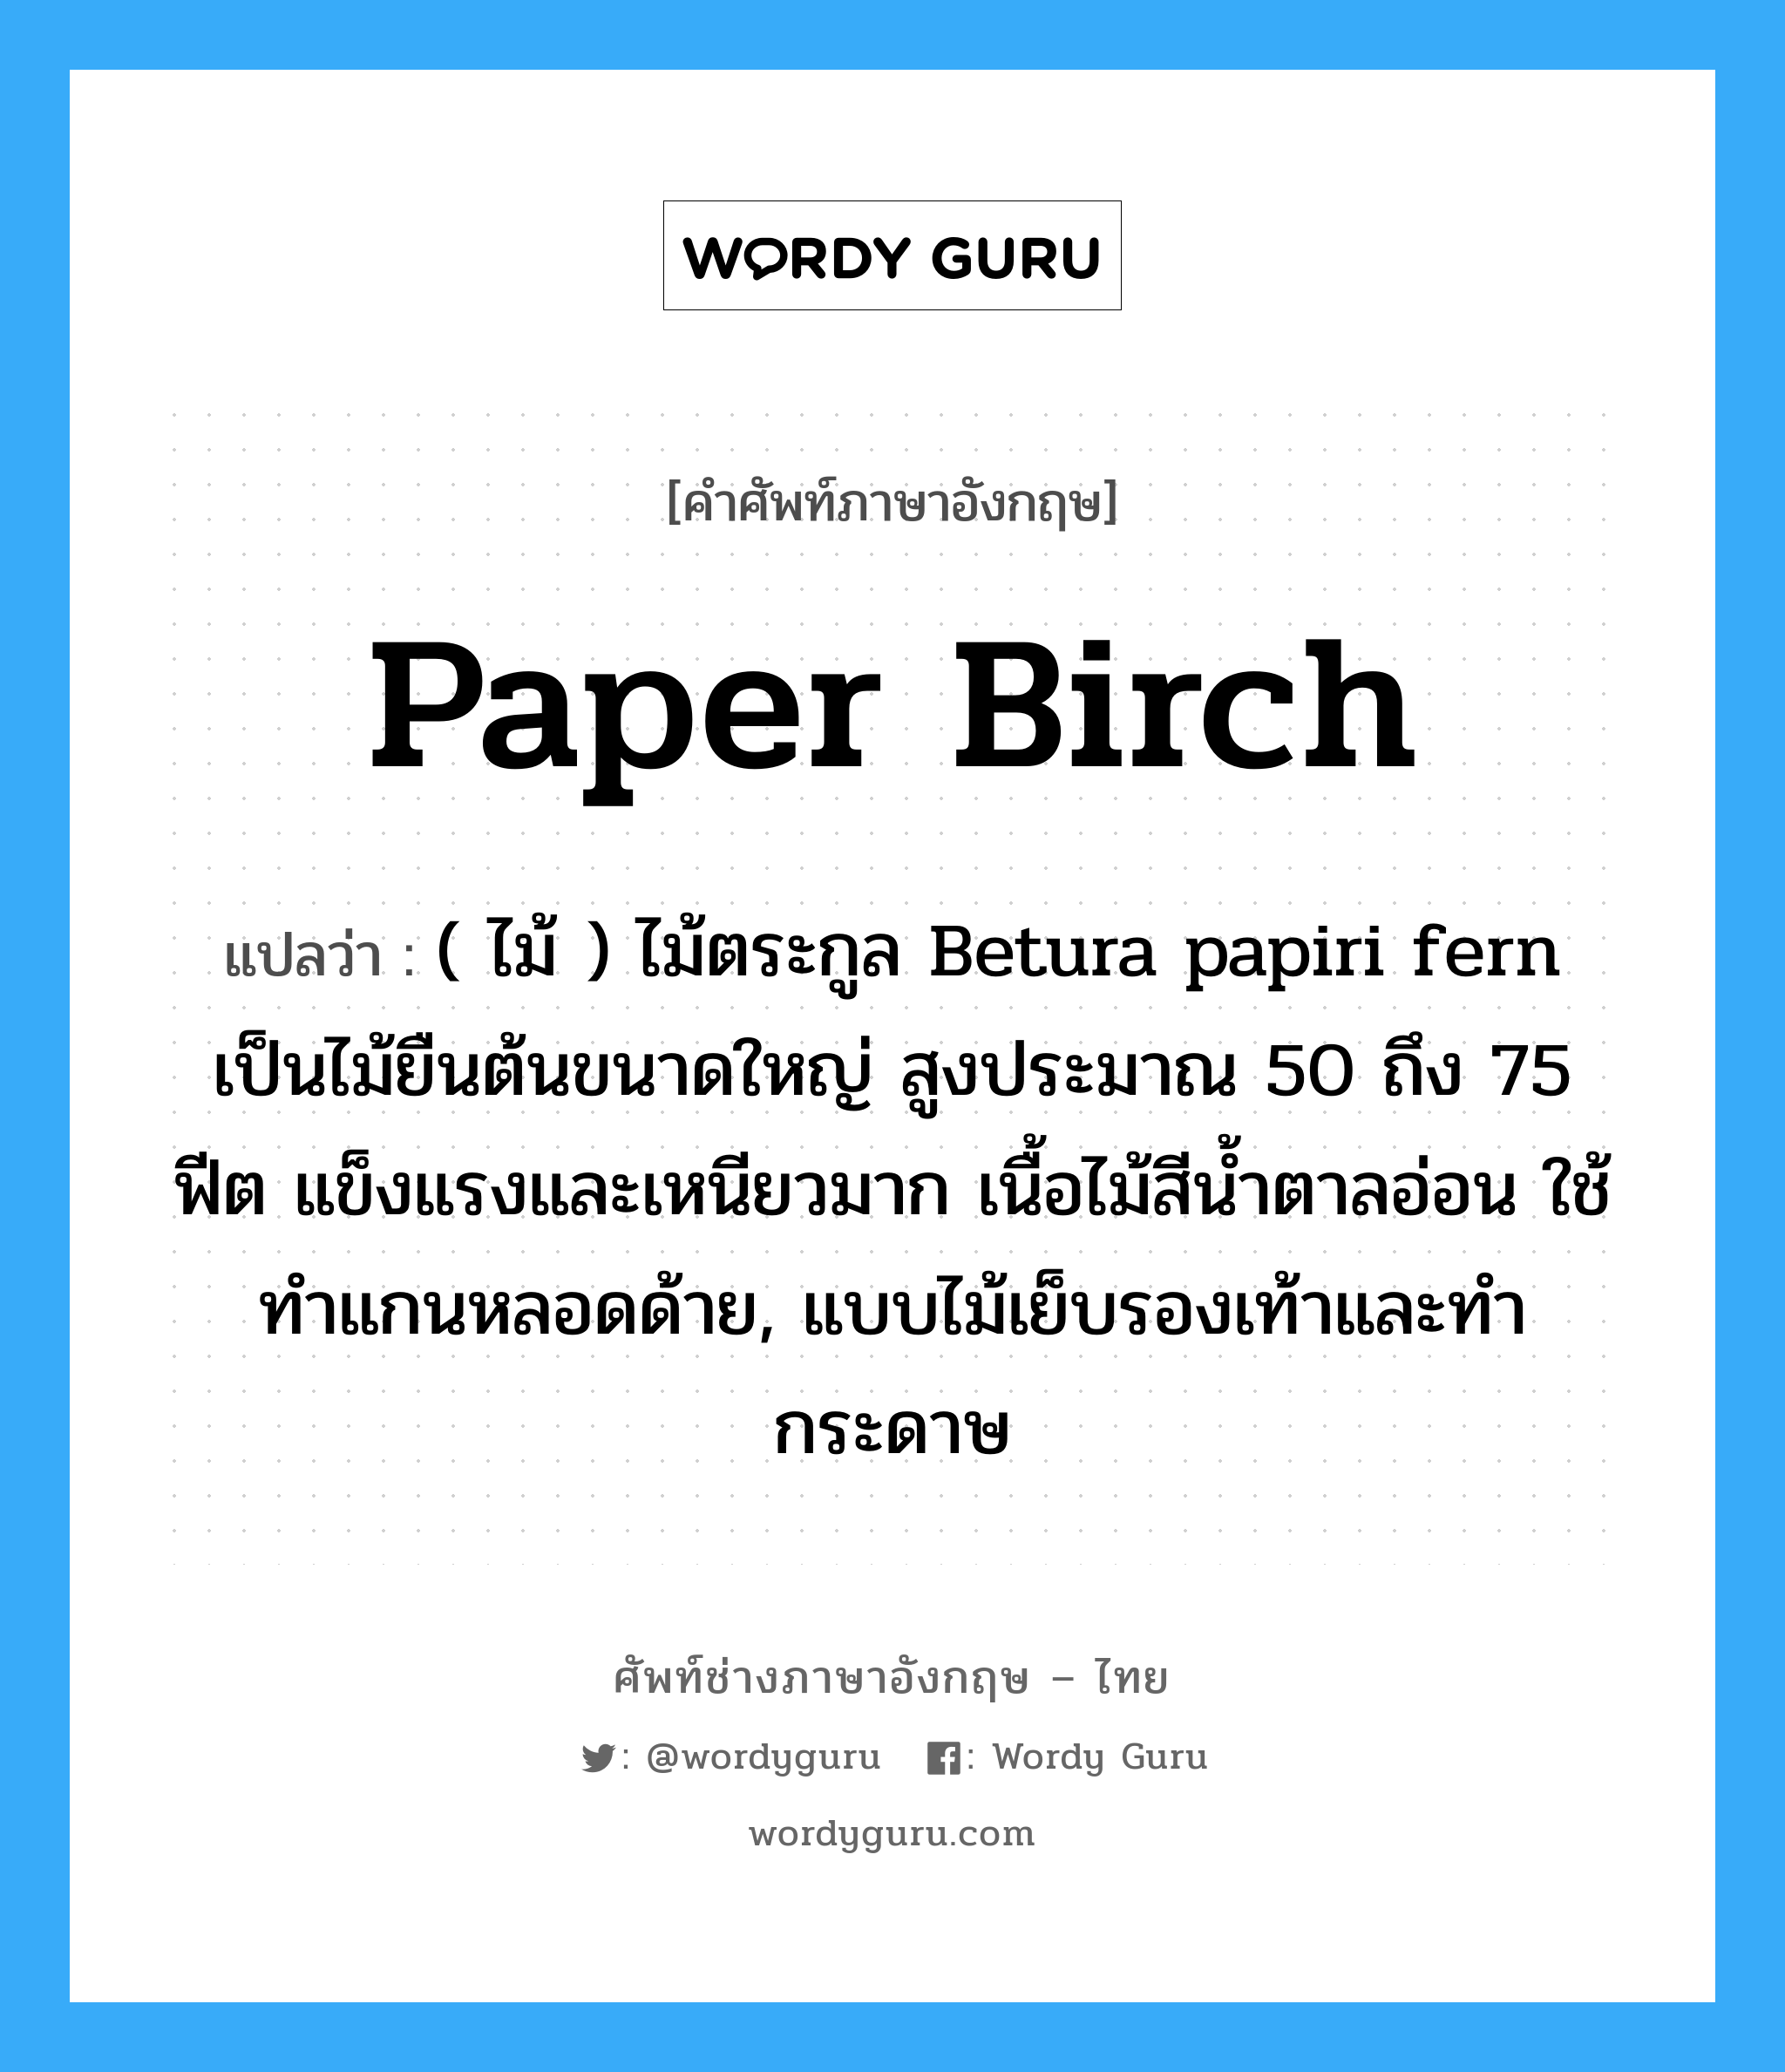 ( ไม้ ) ไม้ตระกูล Betura papiri fern เป็นไม้ยืนต้นขนาดใหญ่ สูงประมาณ 50 ถึง 75 ฟีต แข็งแรงและเหนียวมาก เนื้อไม้สีน้ำตาลอ่อน ใช้ทำแกนหลอดด้าย, แบบไม้เย็บรองเท้าและทำกระดาษ ภาษาอังกฤษ?, คำศัพท์ช่างภาษาอังกฤษ - ไทย ( ไม้ ) ไม้ตระกูล Betura papiri fern เป็นไม้ยืนต้นขนาดใหญ่ สูงประมาณ 50 ถึง 75 ฟีต แข็งแรงและเหนียวมาก เนื้อไม้สีน้ำตาลอ่อน ใช้ทำแกนหลอดด้าย, แบบไม้เย็บรองเท้าและทำกระดาษ คำศัพท์ภาษาอังกฤษ ( ไม้ ) ไม้ตระกูล Betura papiri fern เป็นไม้ยืนต้นขนาดใหญ่ สูงประมาณ 50 ถึง 75 ฟีต แข็งแรงและเหนียวมาก เนื้อไม้สีน้ำตาลอ่อน ใช้ทำแกนหลอดด้าย, แบบไม้เย็บรองเท้าและทำกระดาษ แปลว่า paper birch